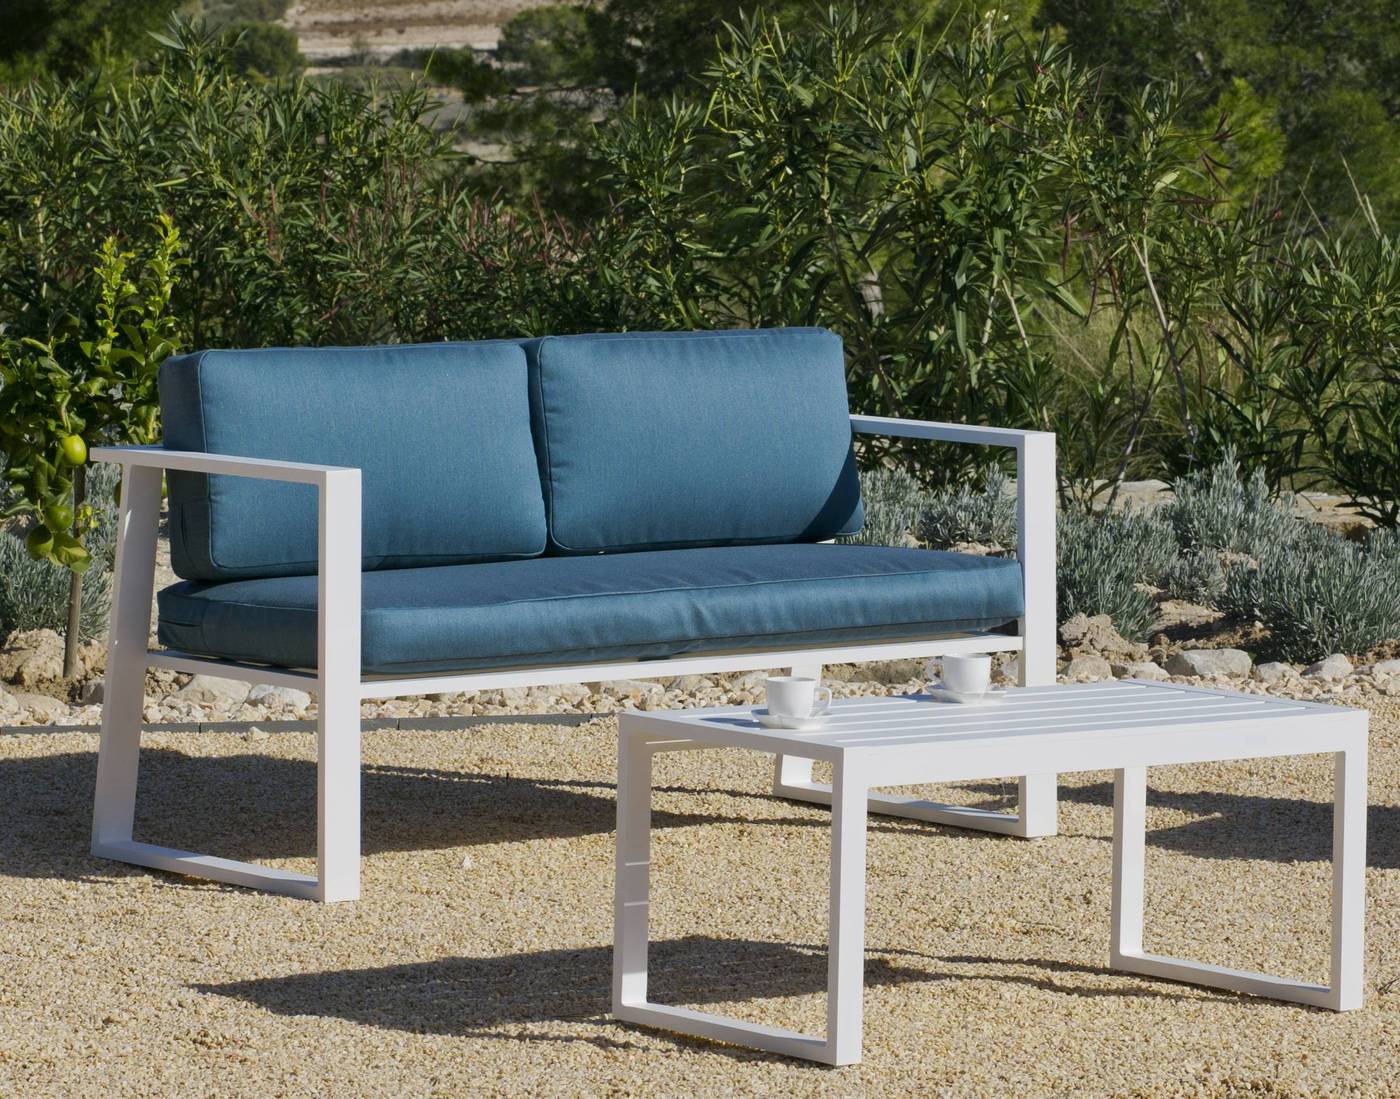 Conjunto Aluminio Luxe Boracay-7 - Conjunto aluminio luxe: 1 sofá de 2 plazas + 2 sillones + 1 mesa de centro + cojines. Disponible en color blanco, plata y antracita.